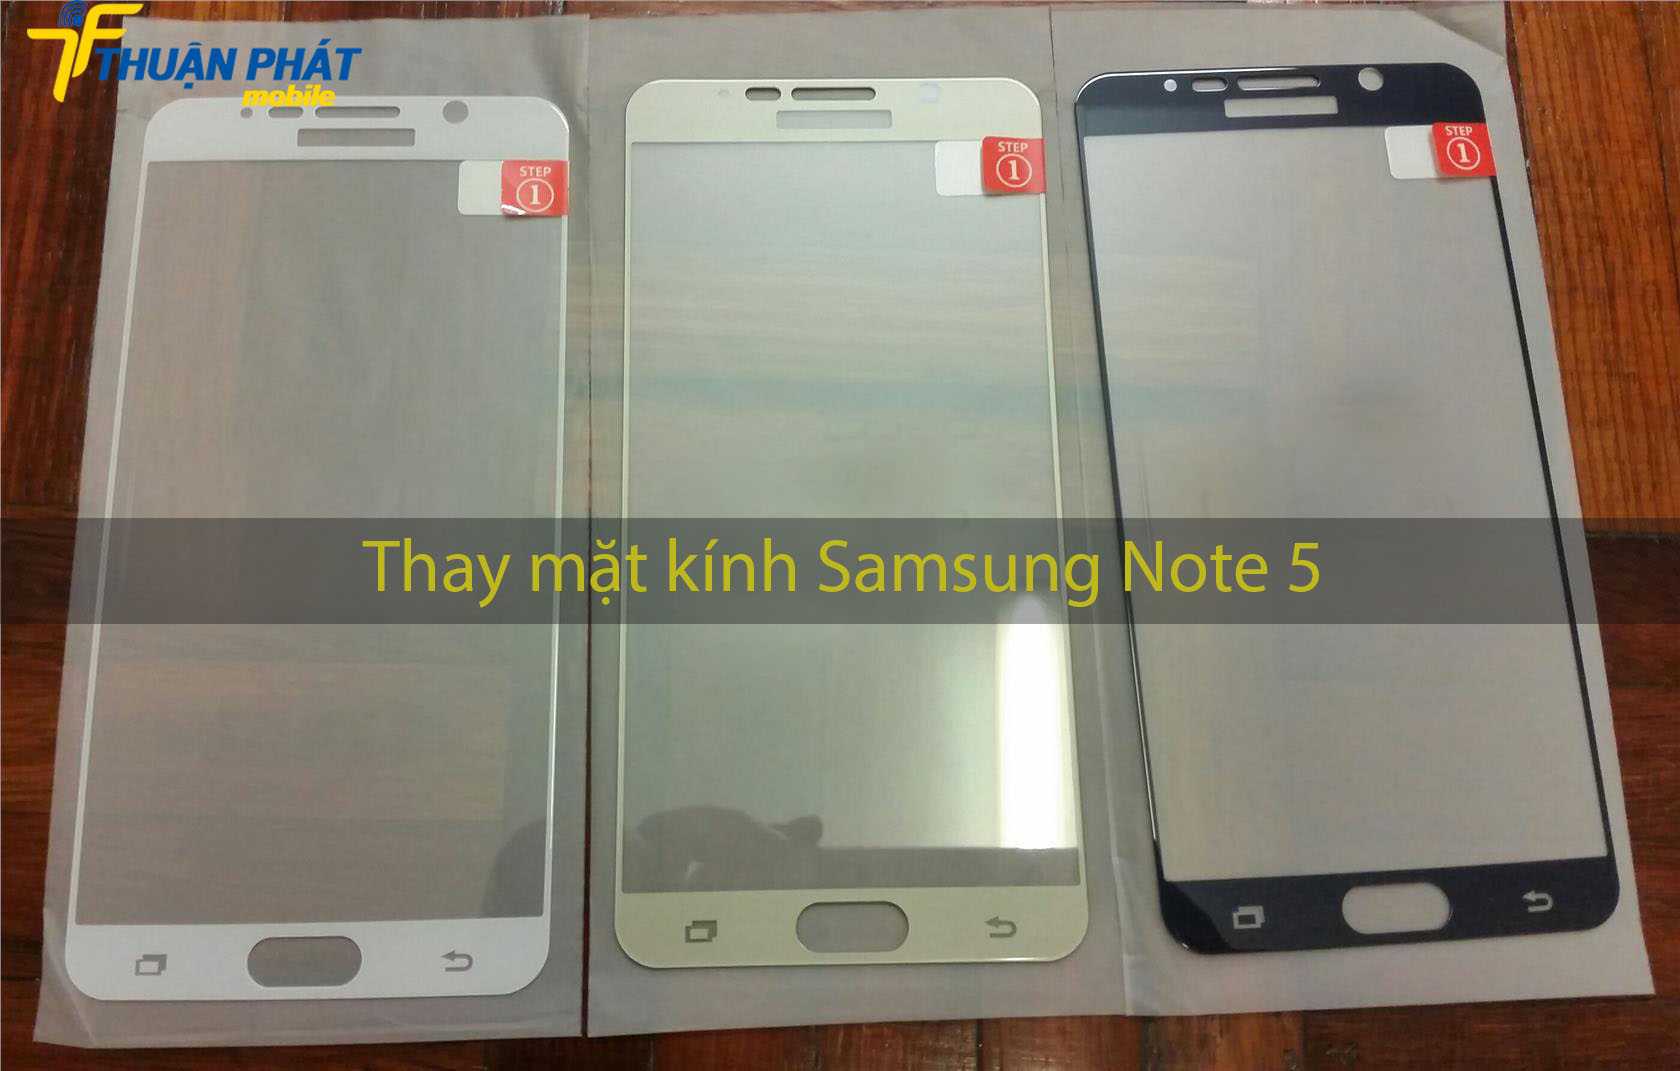 Thay mặt kính Samsung Note 5 tại Thuận Phát Mobile